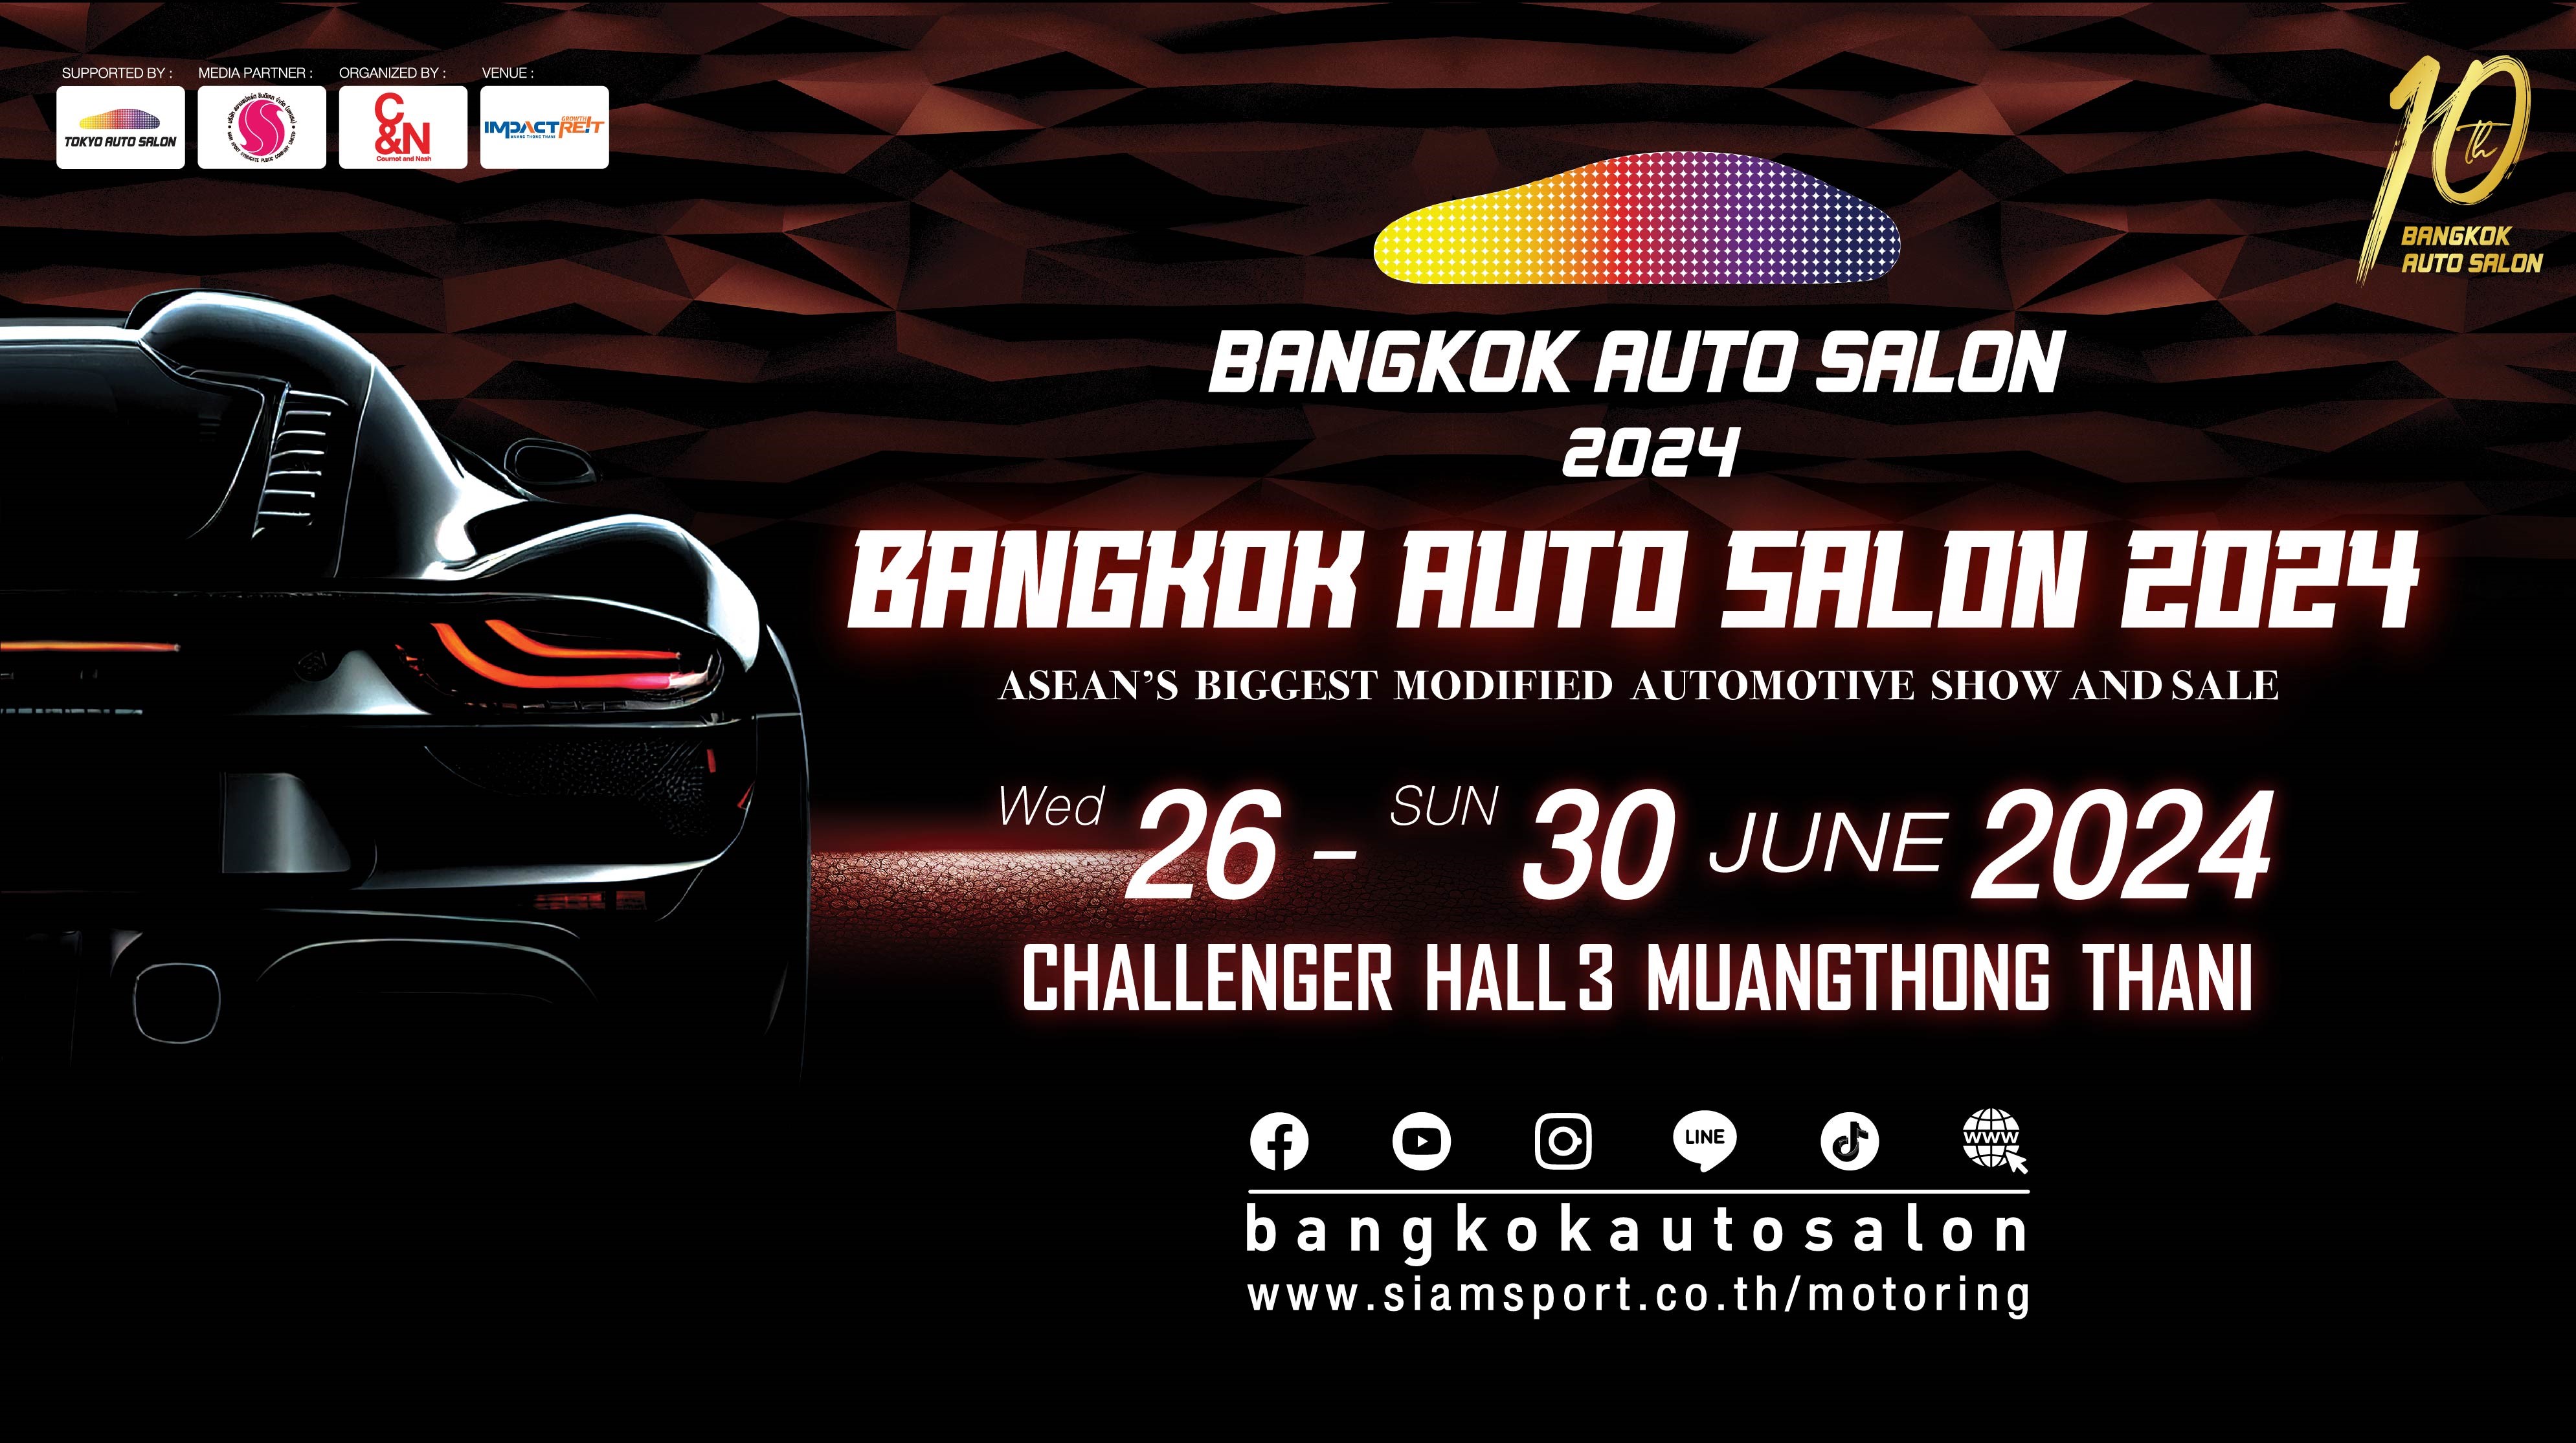 ยิ่งใหญ่ที่สุดในอาเซียน! เตรียมพบกับขีดสุดความมันส์-สุดคุ้ม Bangkok Auto Salon 2024